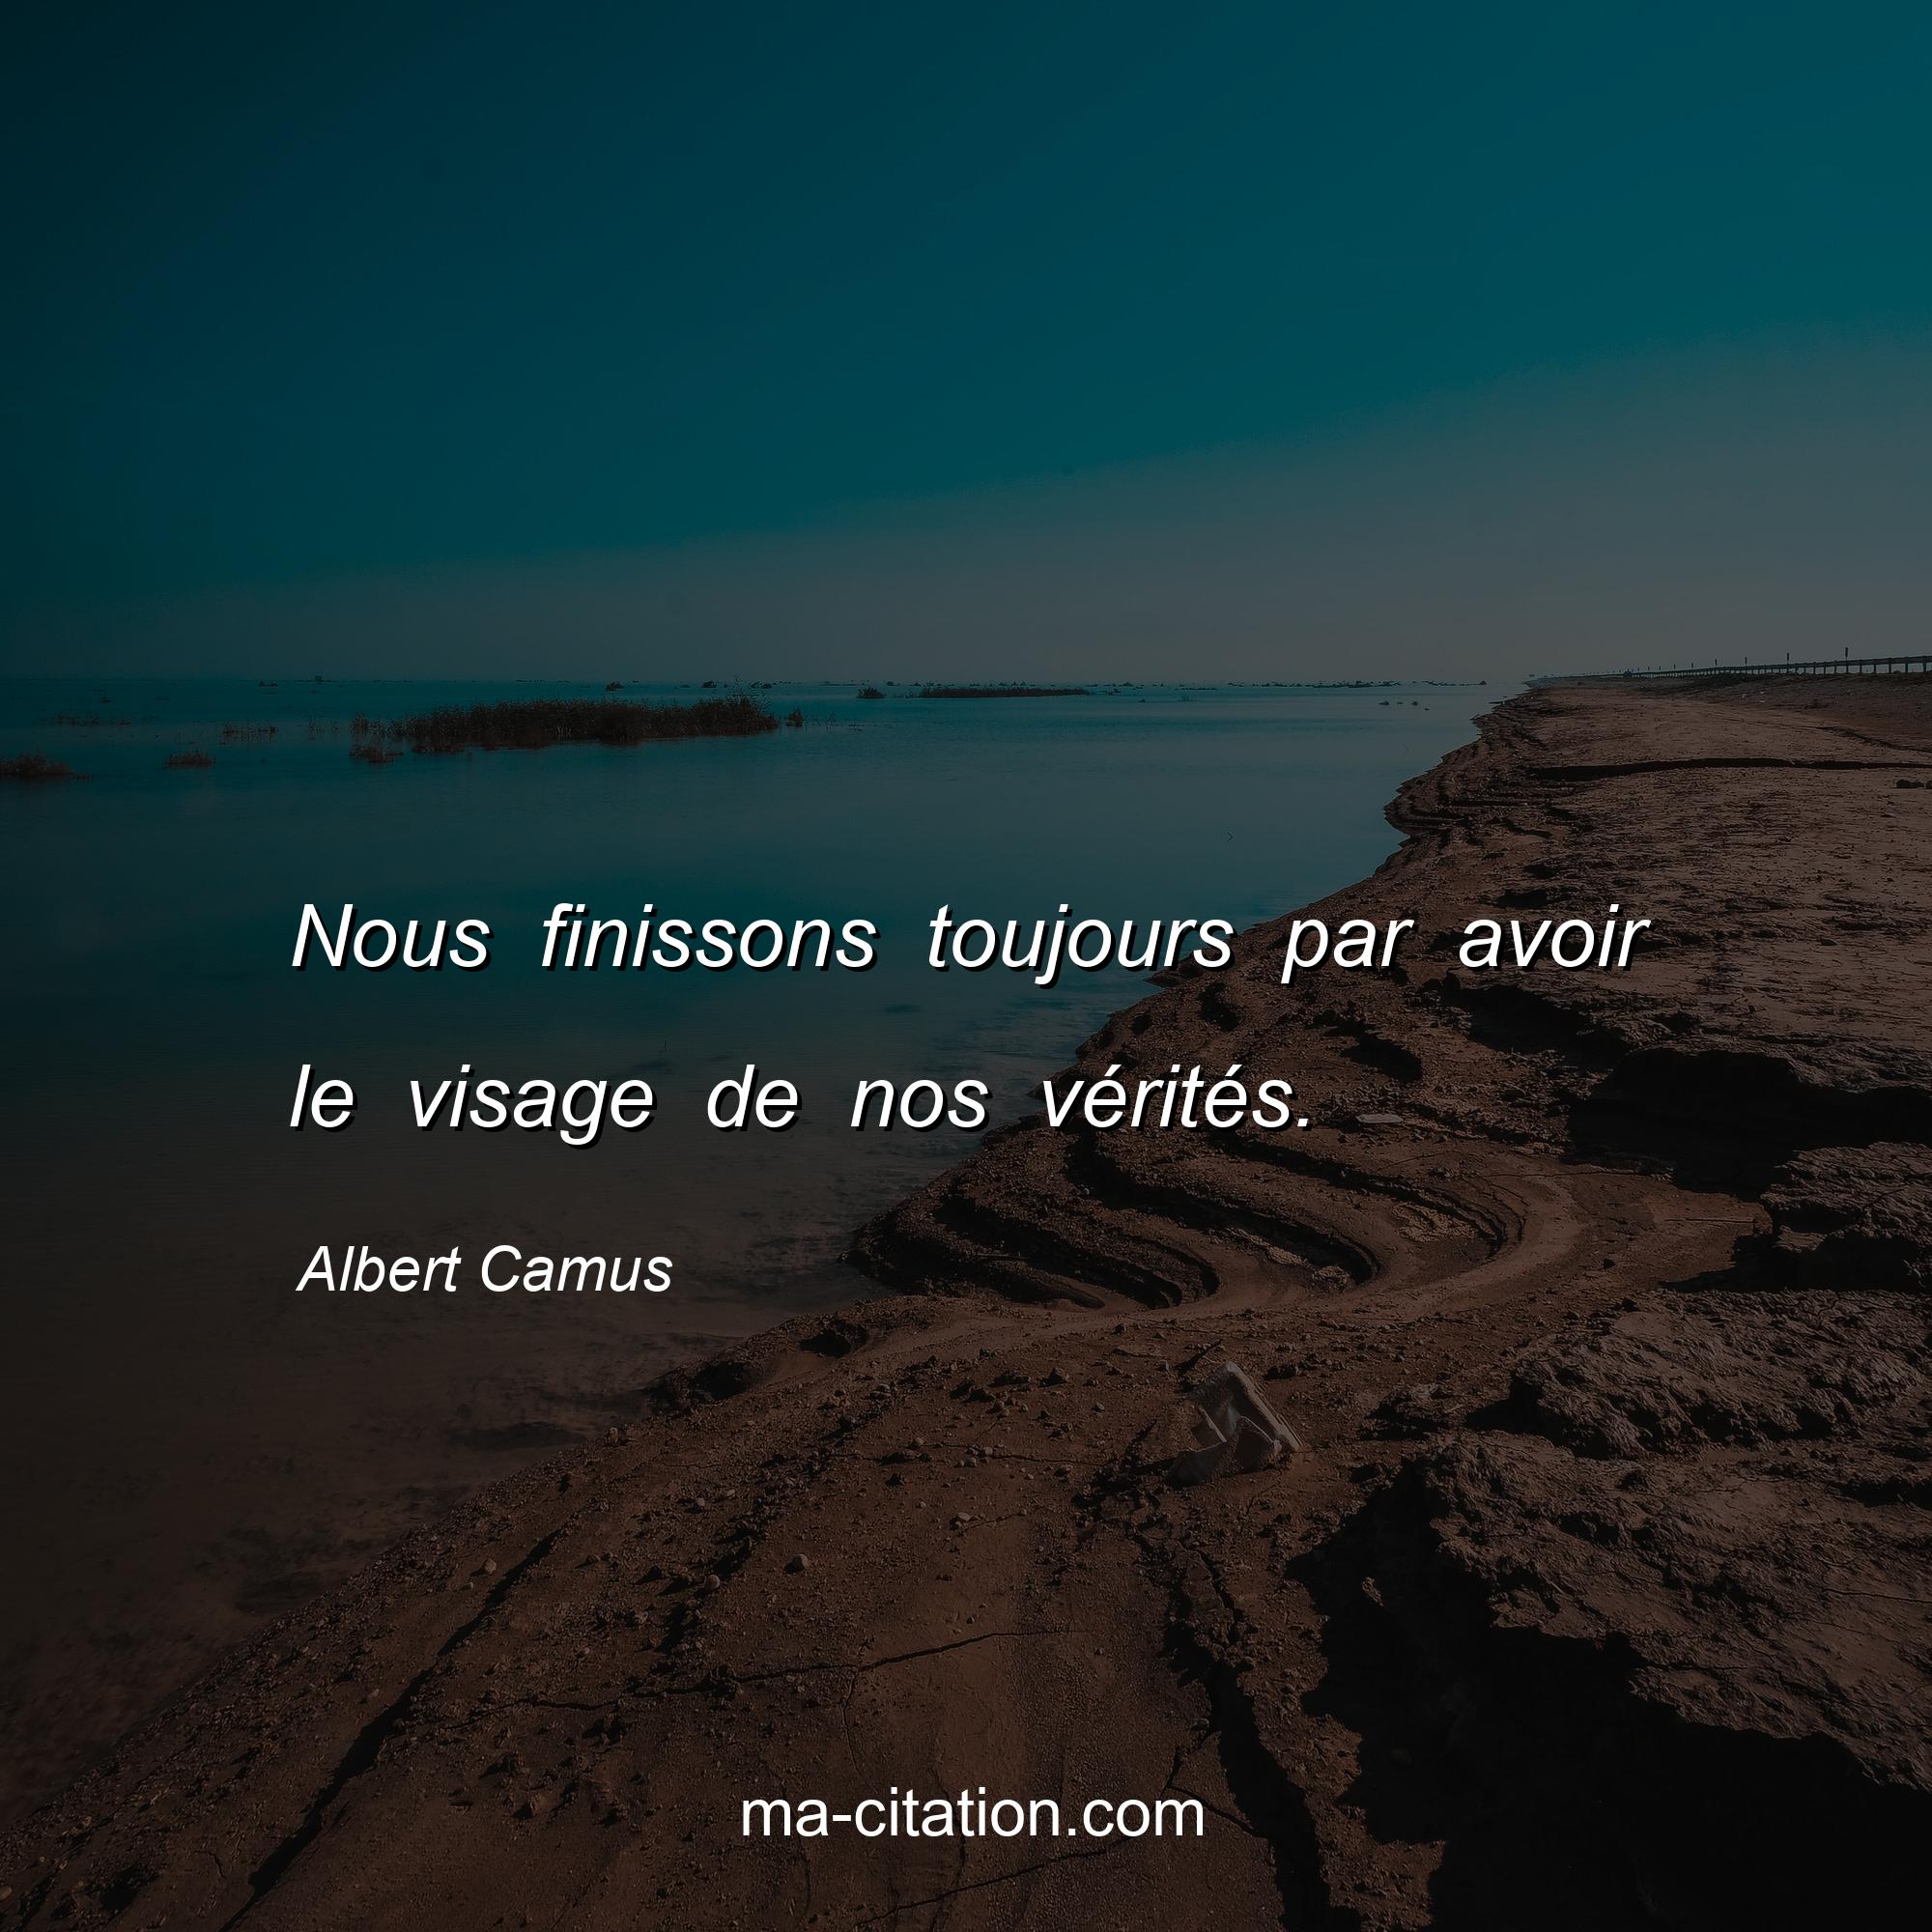 Albert Camus : Nous finissons toujours par avoir le visage de nos vérités.